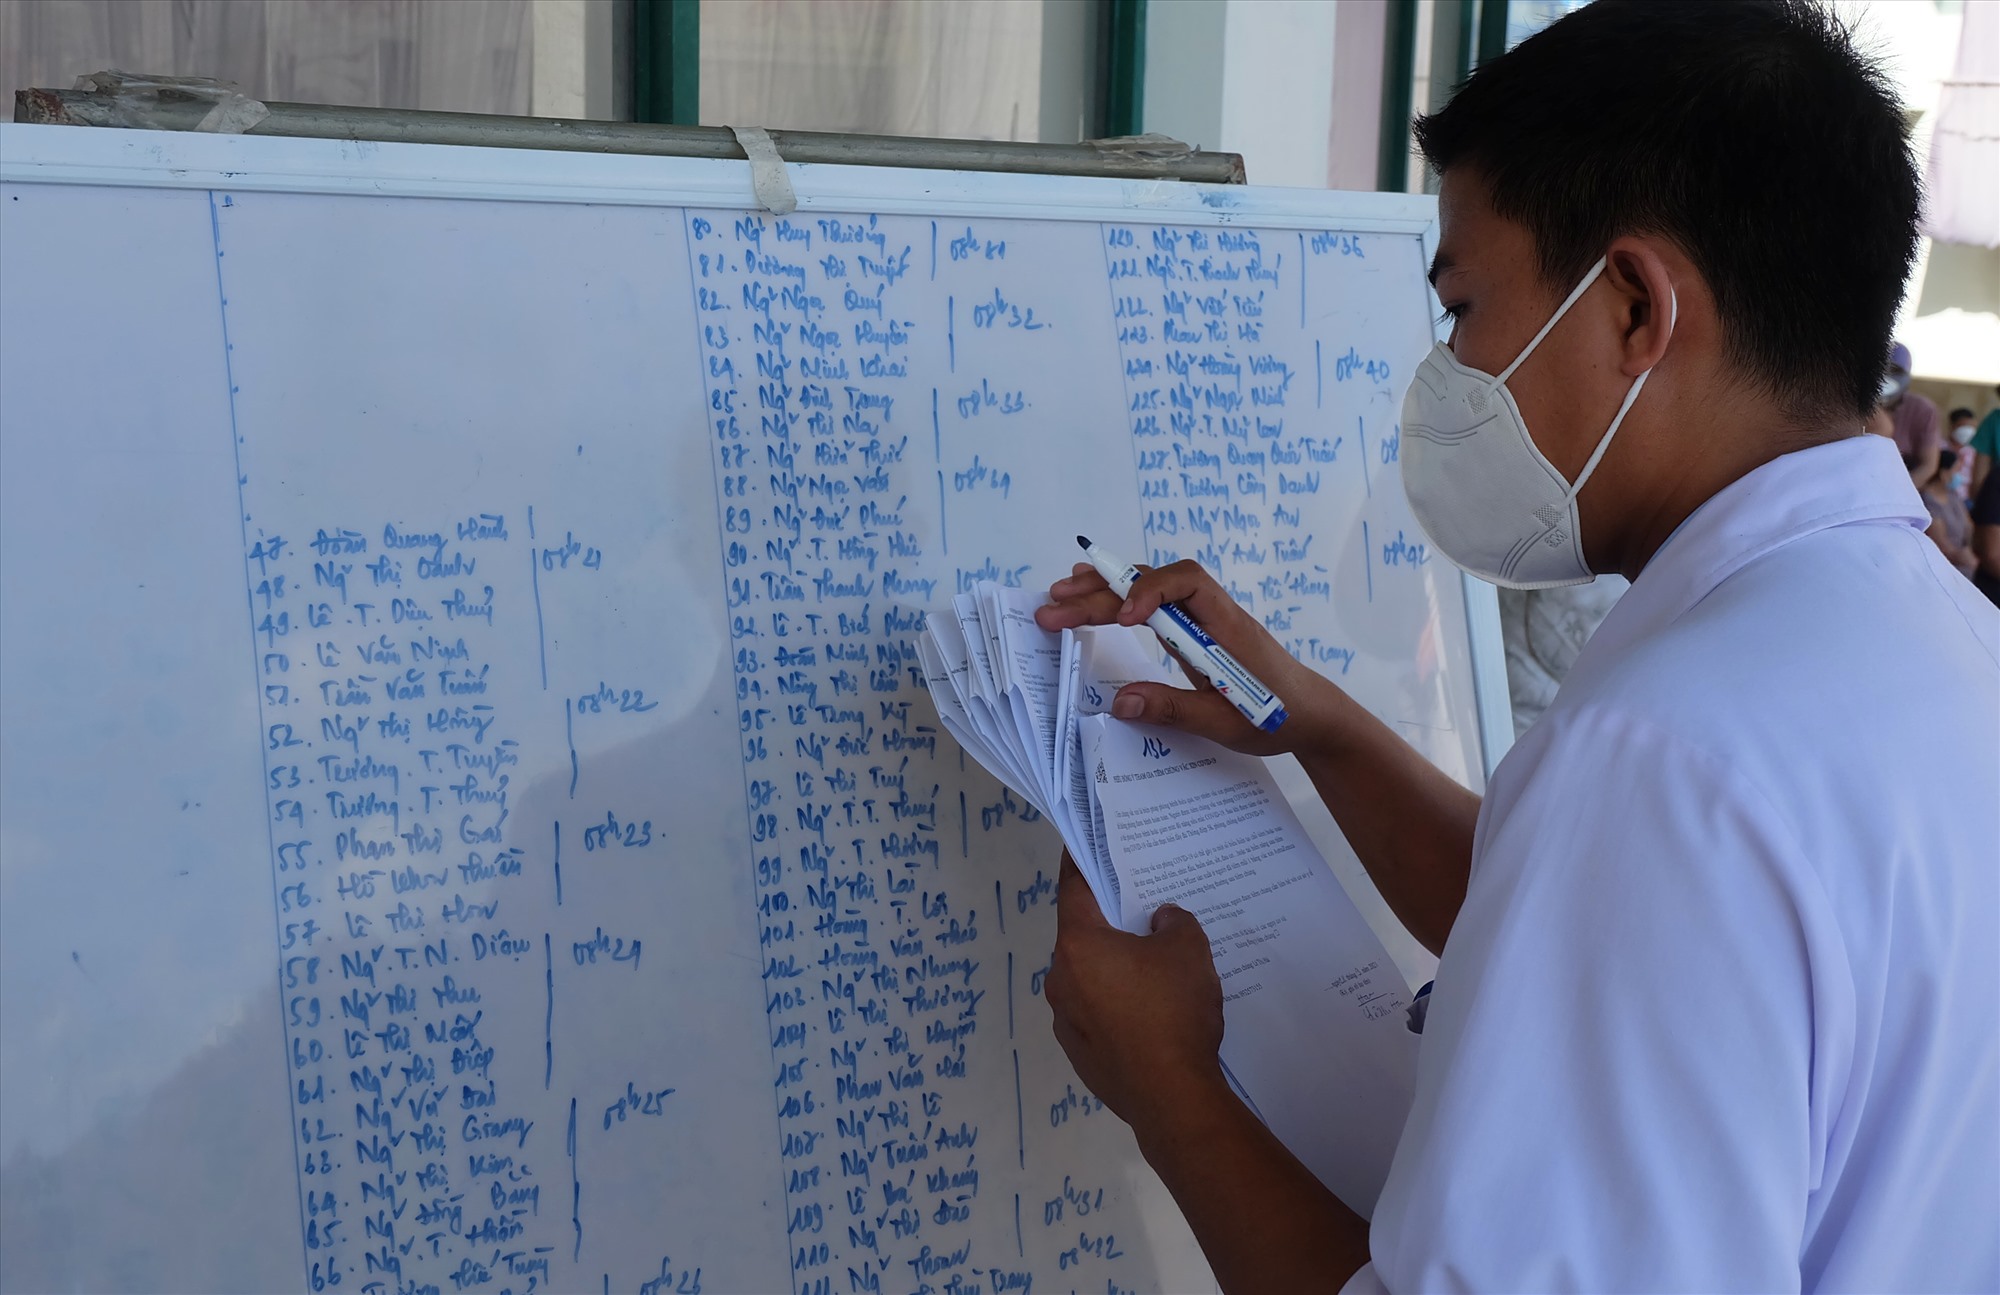 Y sĩ Nguyễn Đăng Thông ghi danh sách người được tiêm chủng lên bảng. Ảnh: hưng Thơ-Nhật Minh